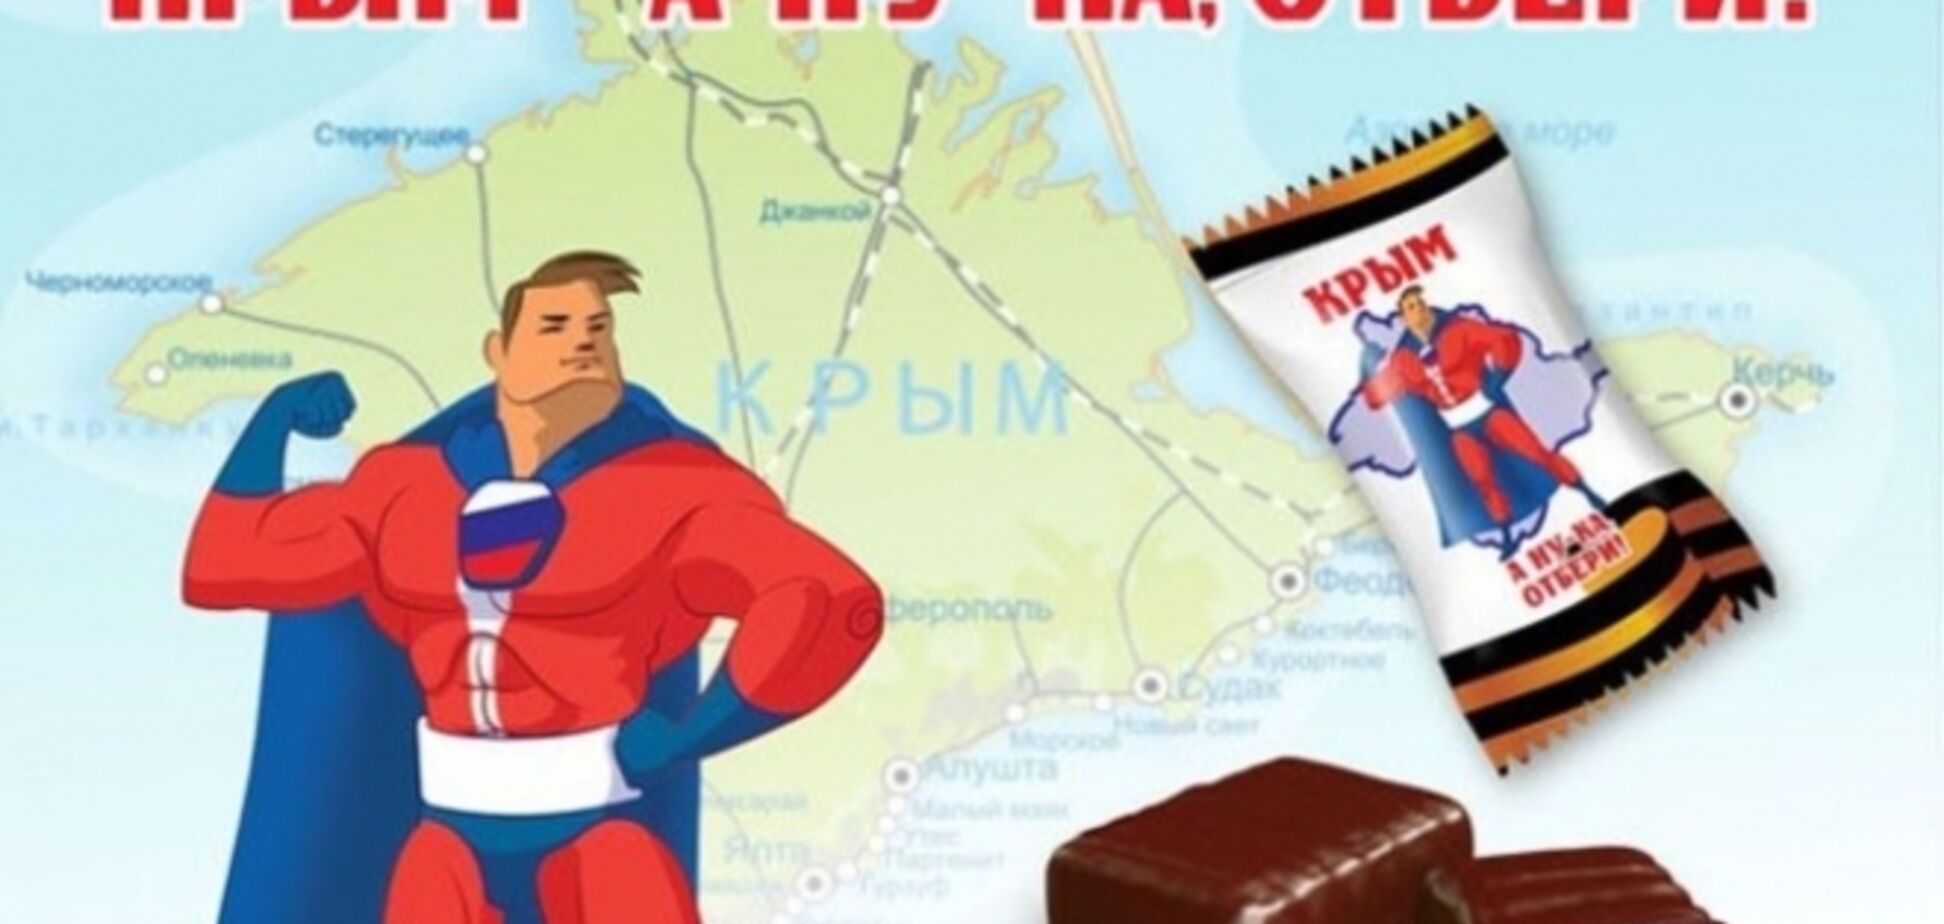 В России начали выпускать конфеты 'Крым. А ну-ка, отбери!'